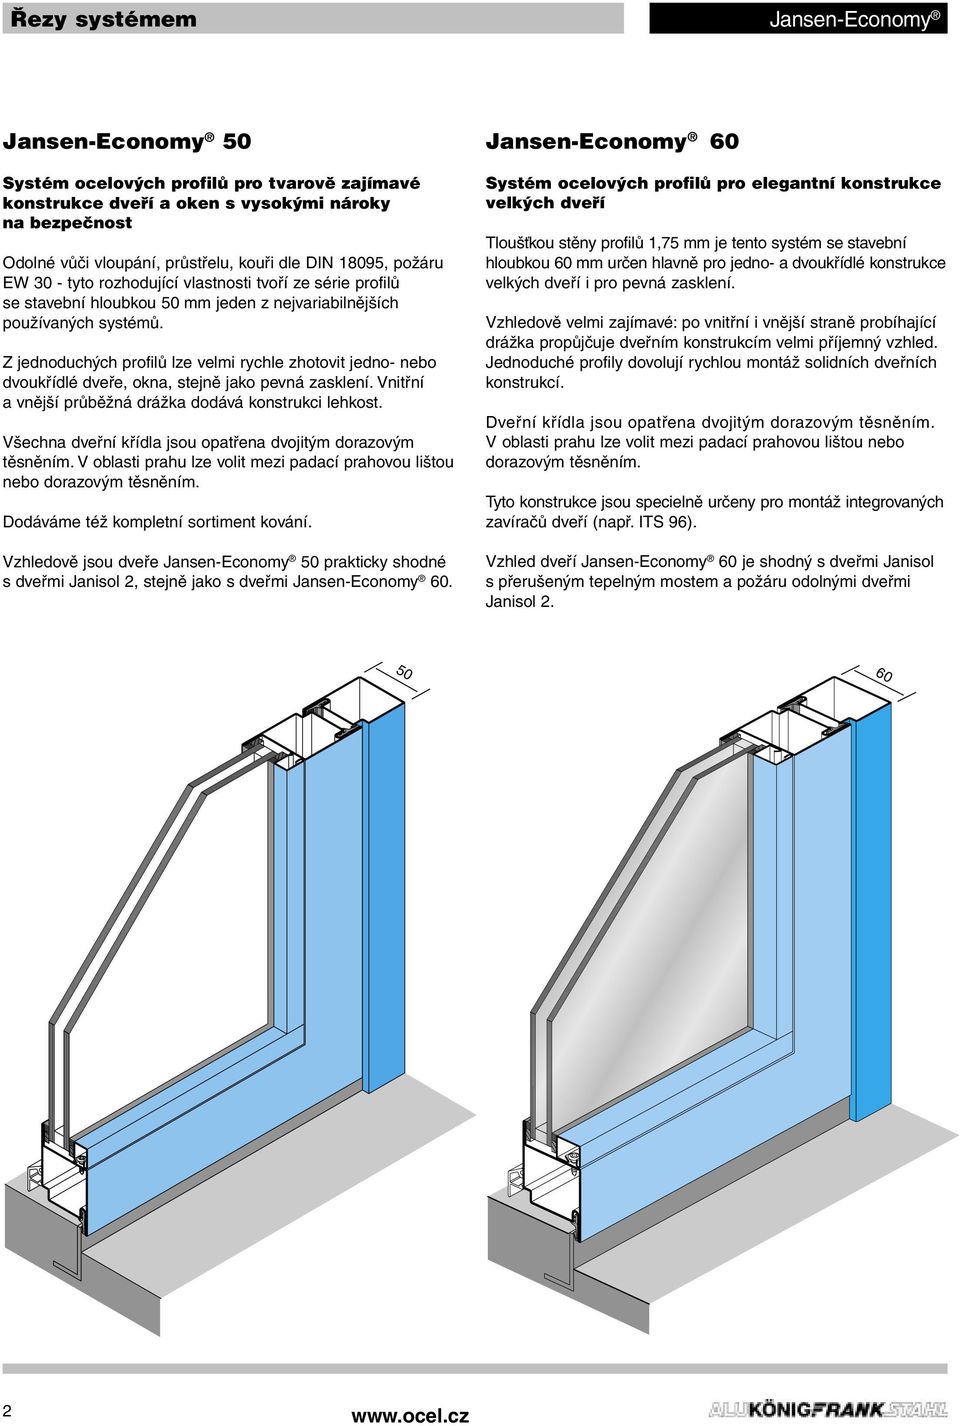 Z jednoduchých profilů lze velmi rychle zhotovit jedno- nebo dvoukřídlé dveře, okna, stejně jako pevná zasklení. Vnitřní a vnější průběžná drážka dodává konstrukci lehkost.